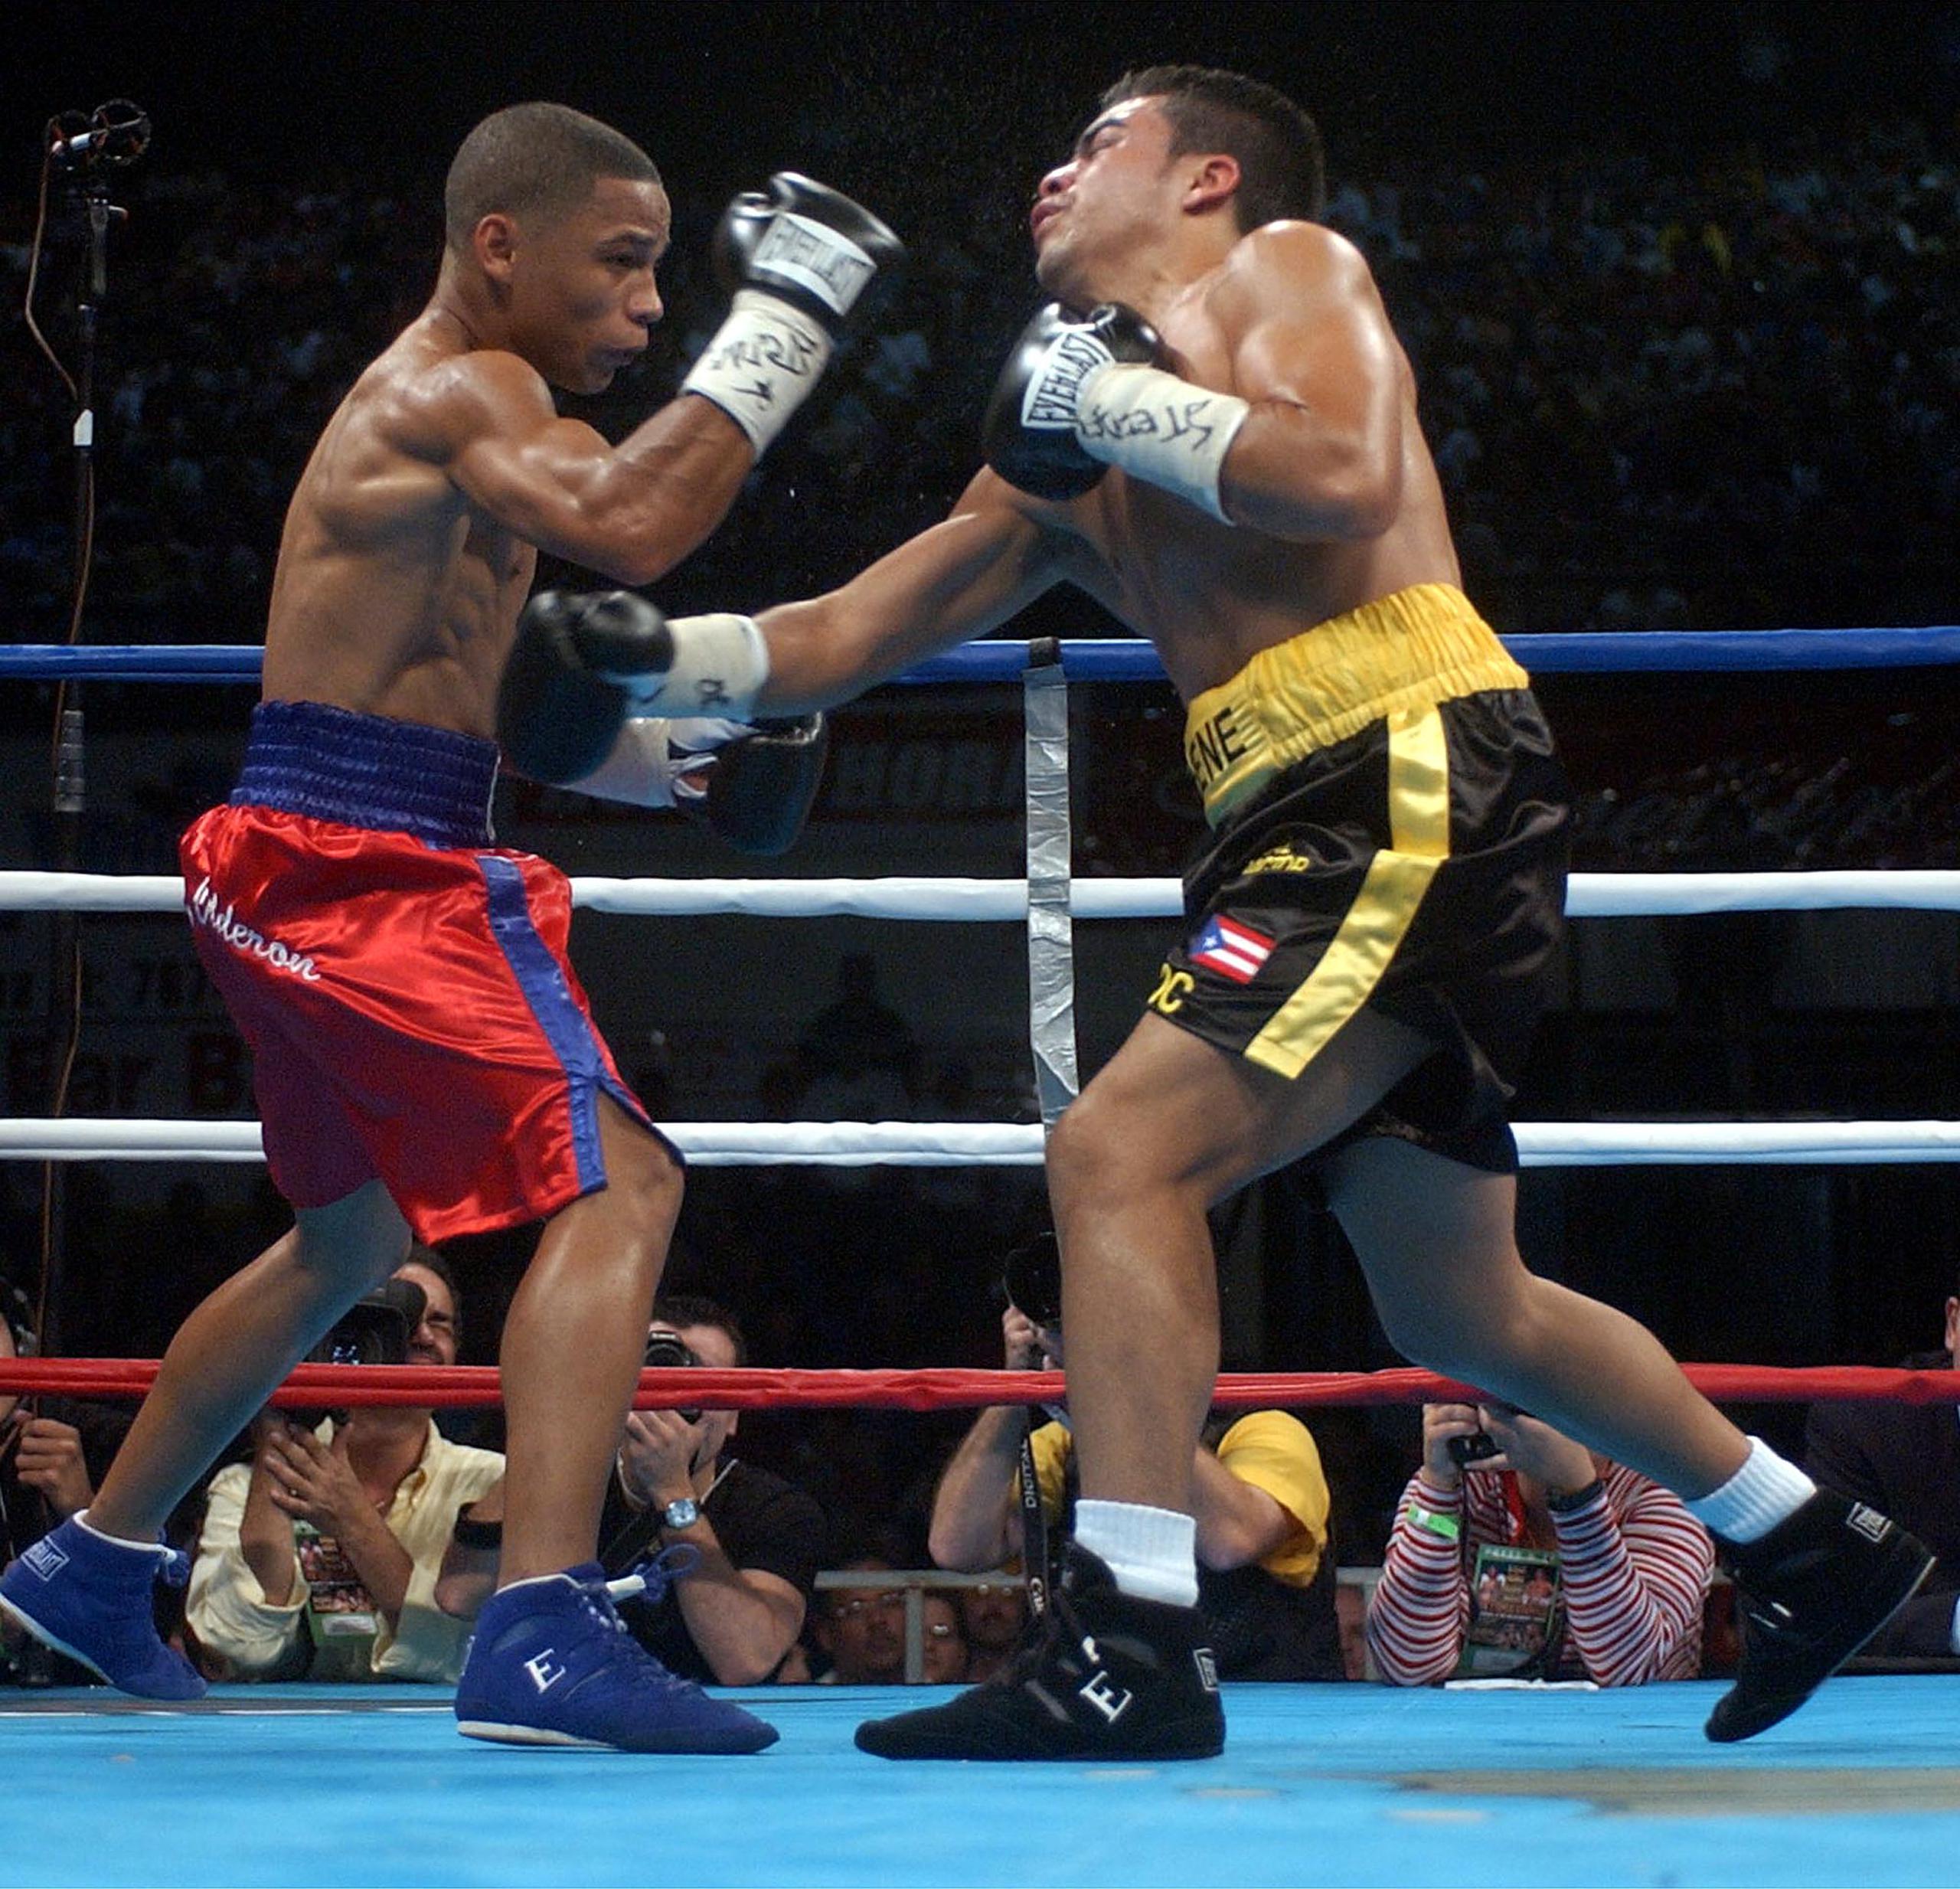 En el 2003, Iván Calderón superó a Alex Sánchez por decisión unánime para retener la faja de la Organización Mundial de Boxeo (OMB), versión de las 105 libras.